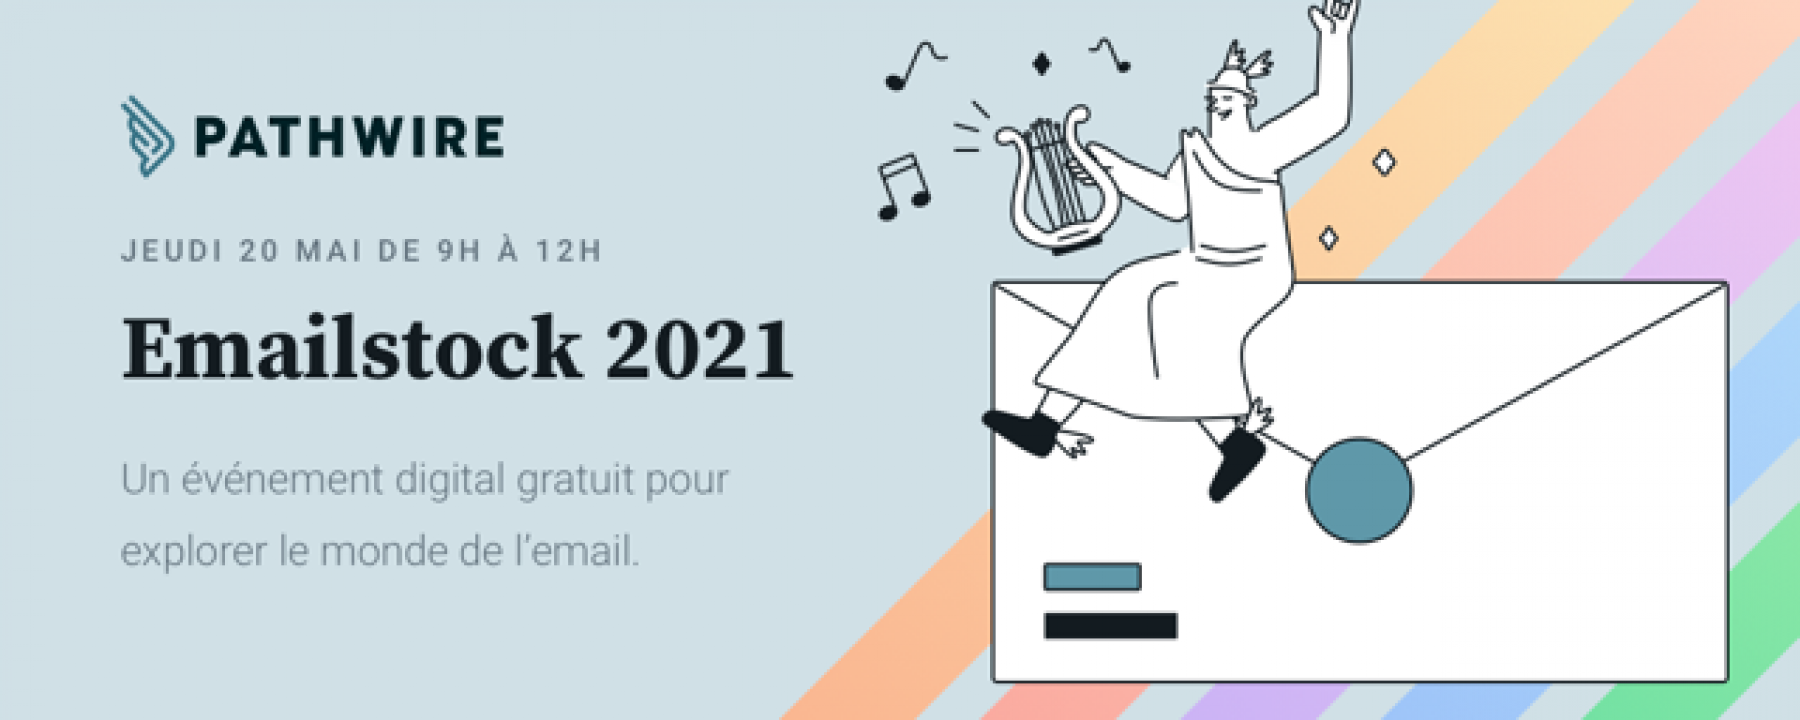 EmailStock 2021, par Pathwire le 20 mai